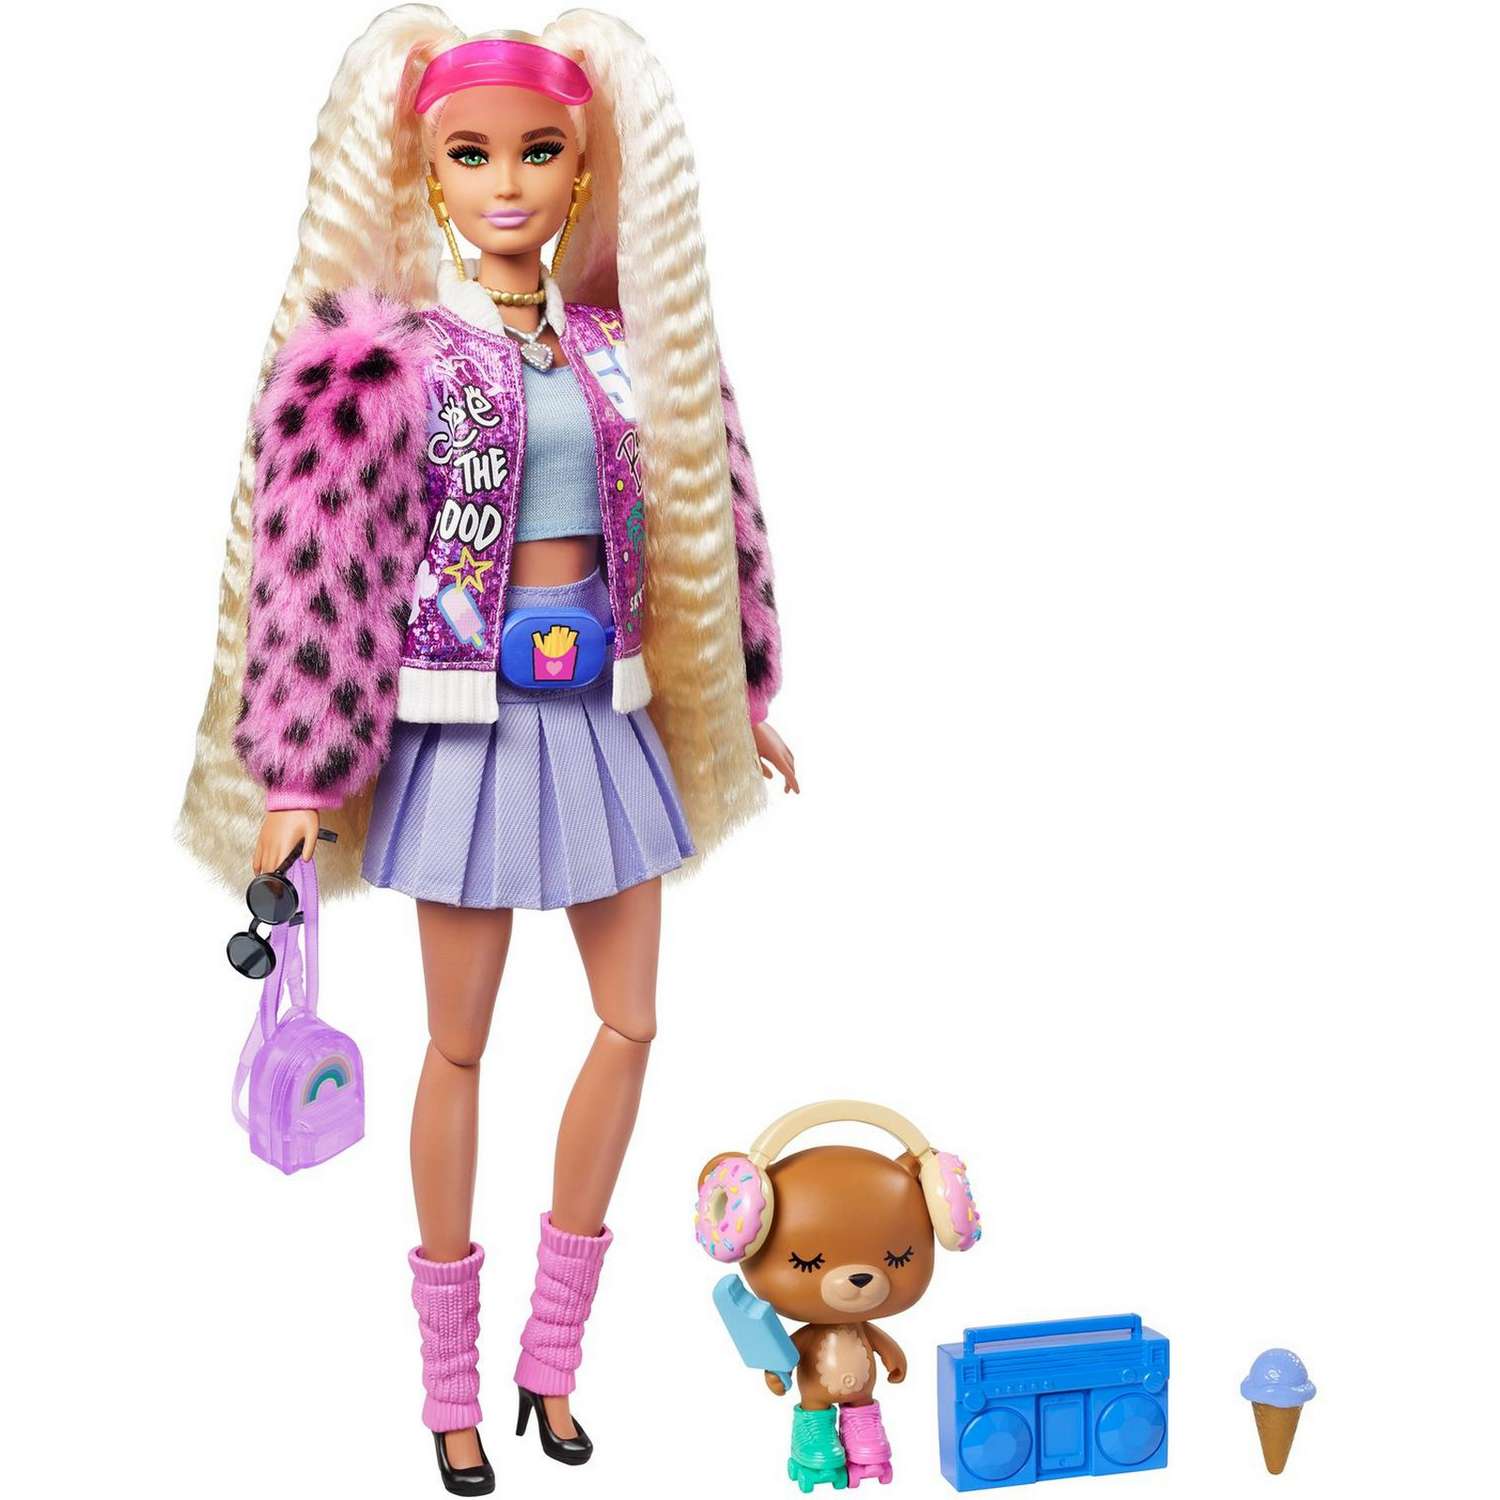 Игры в моду — как Барби изменила детский мир